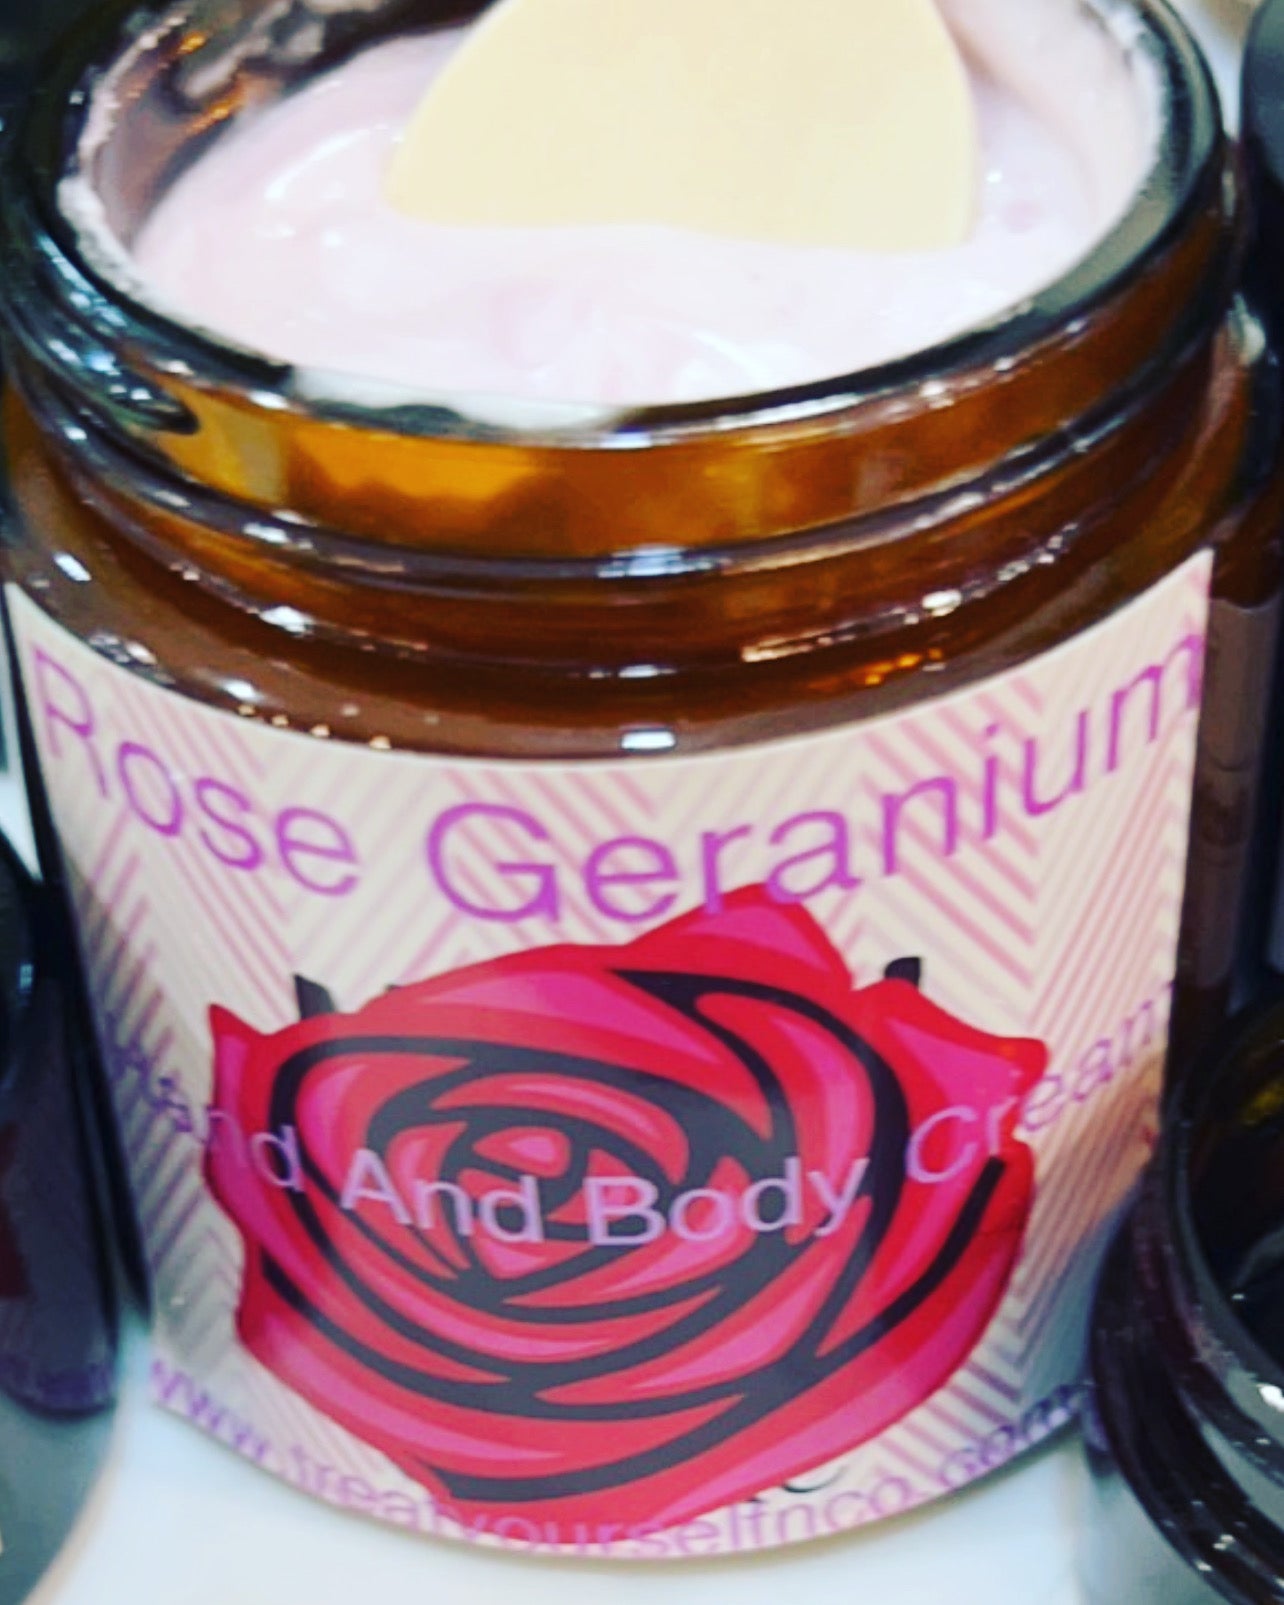 Rose Geranium hand and body cream